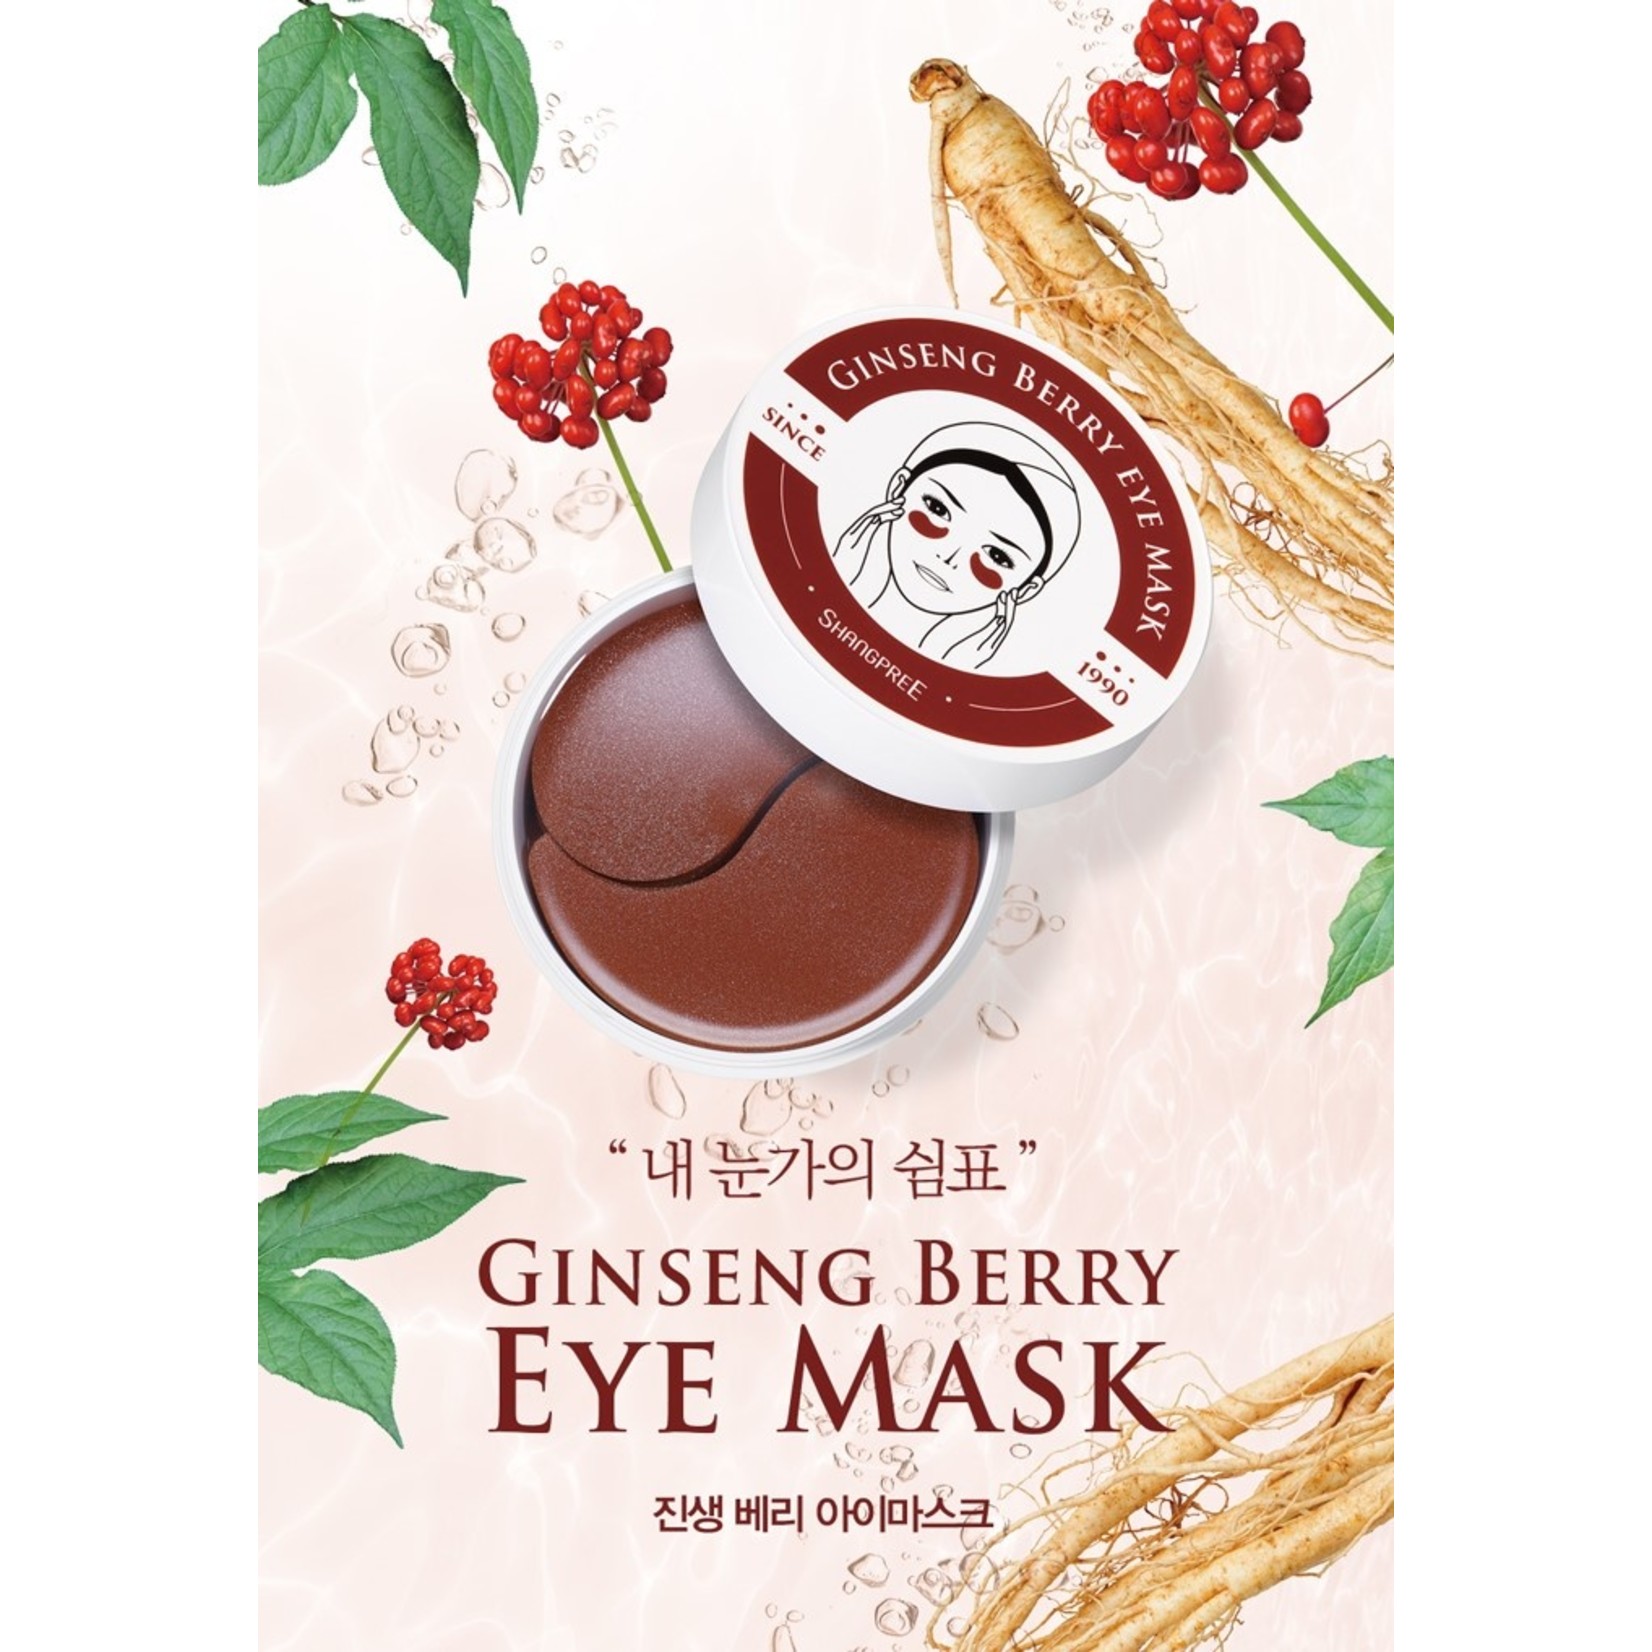 Ginseng Berry Eye Mask